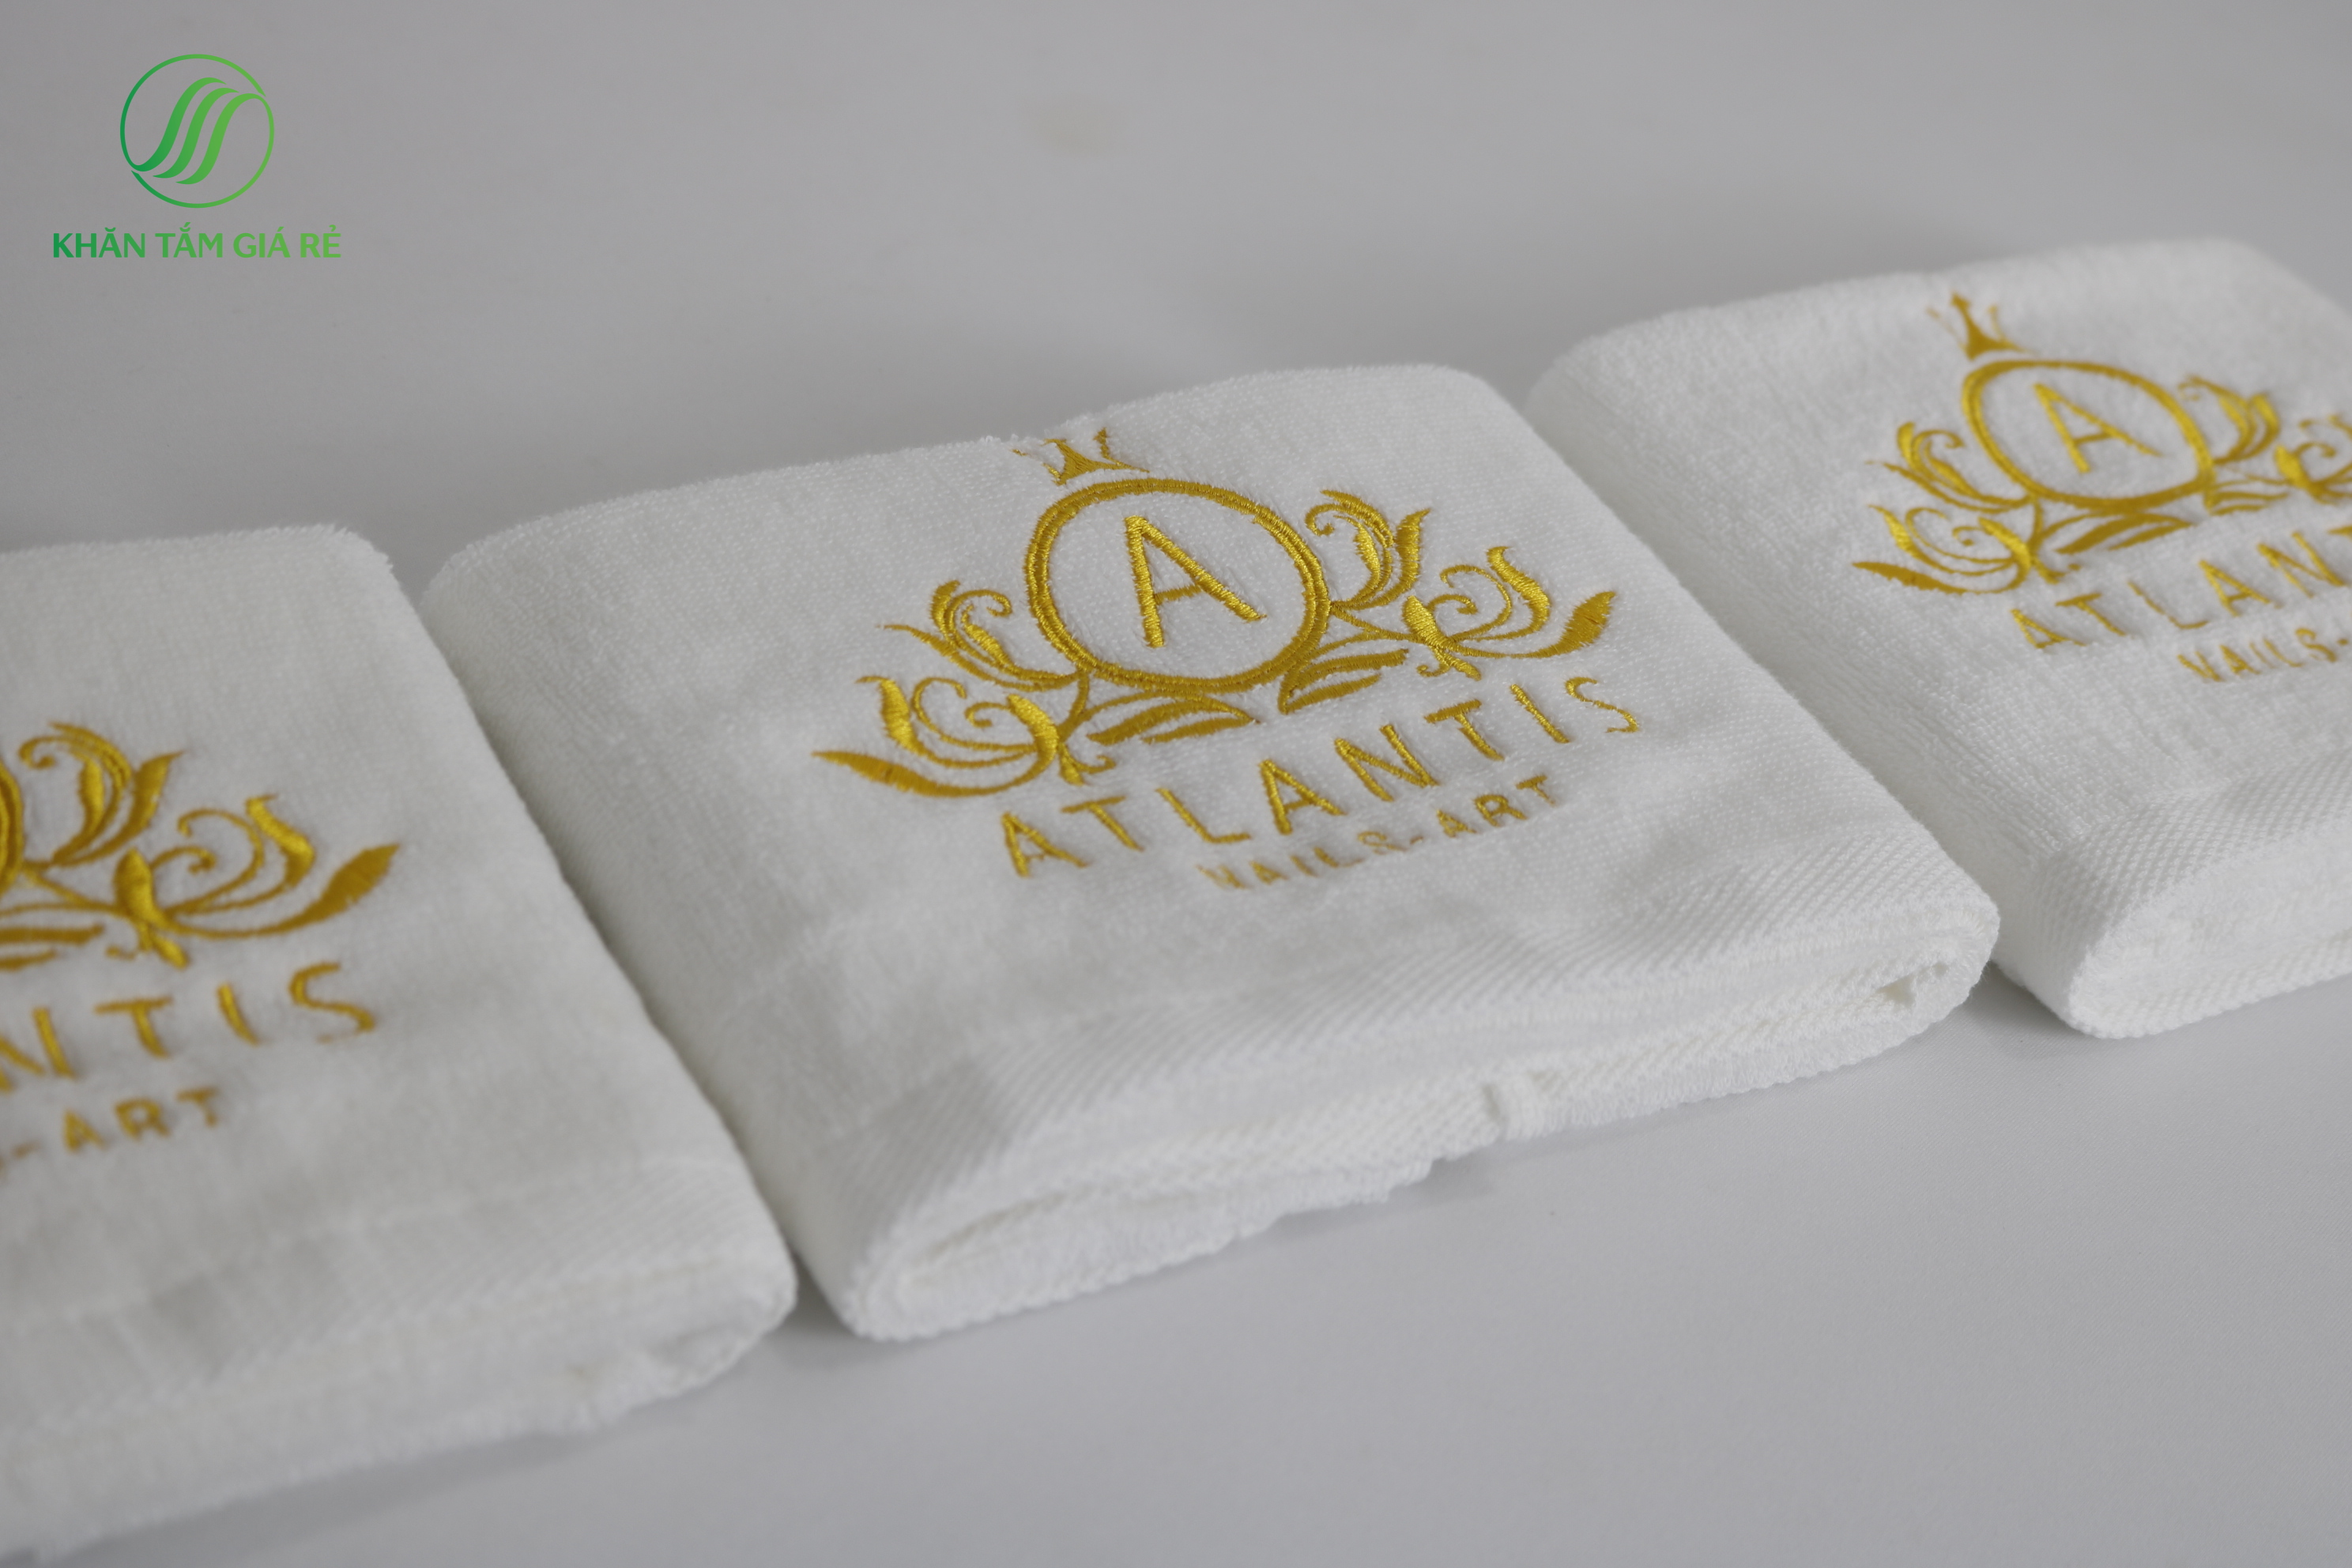 Quality towels